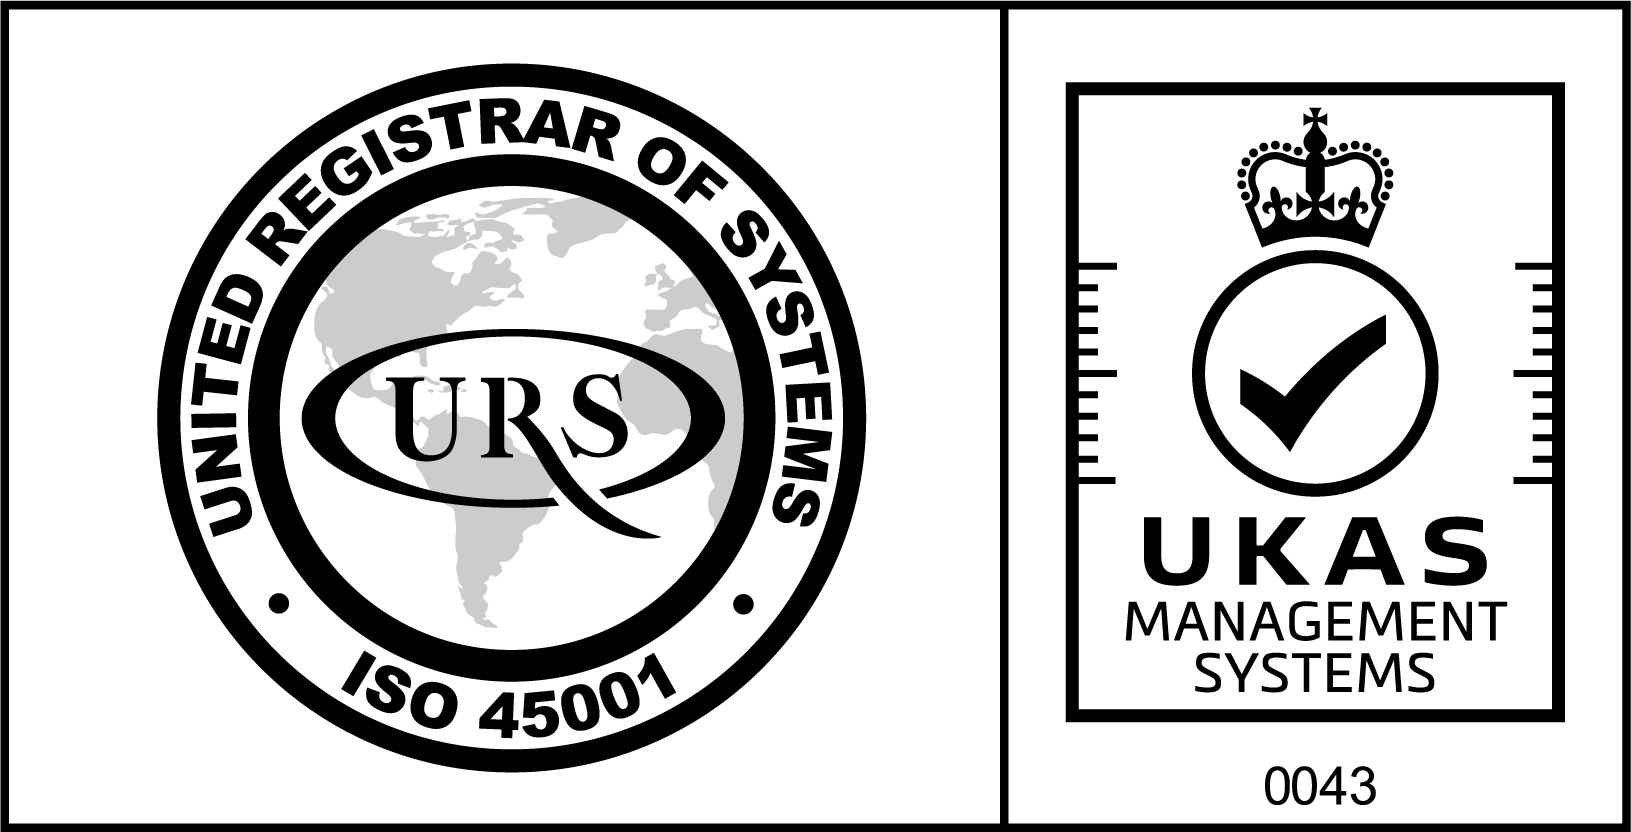 URS UKAS logo